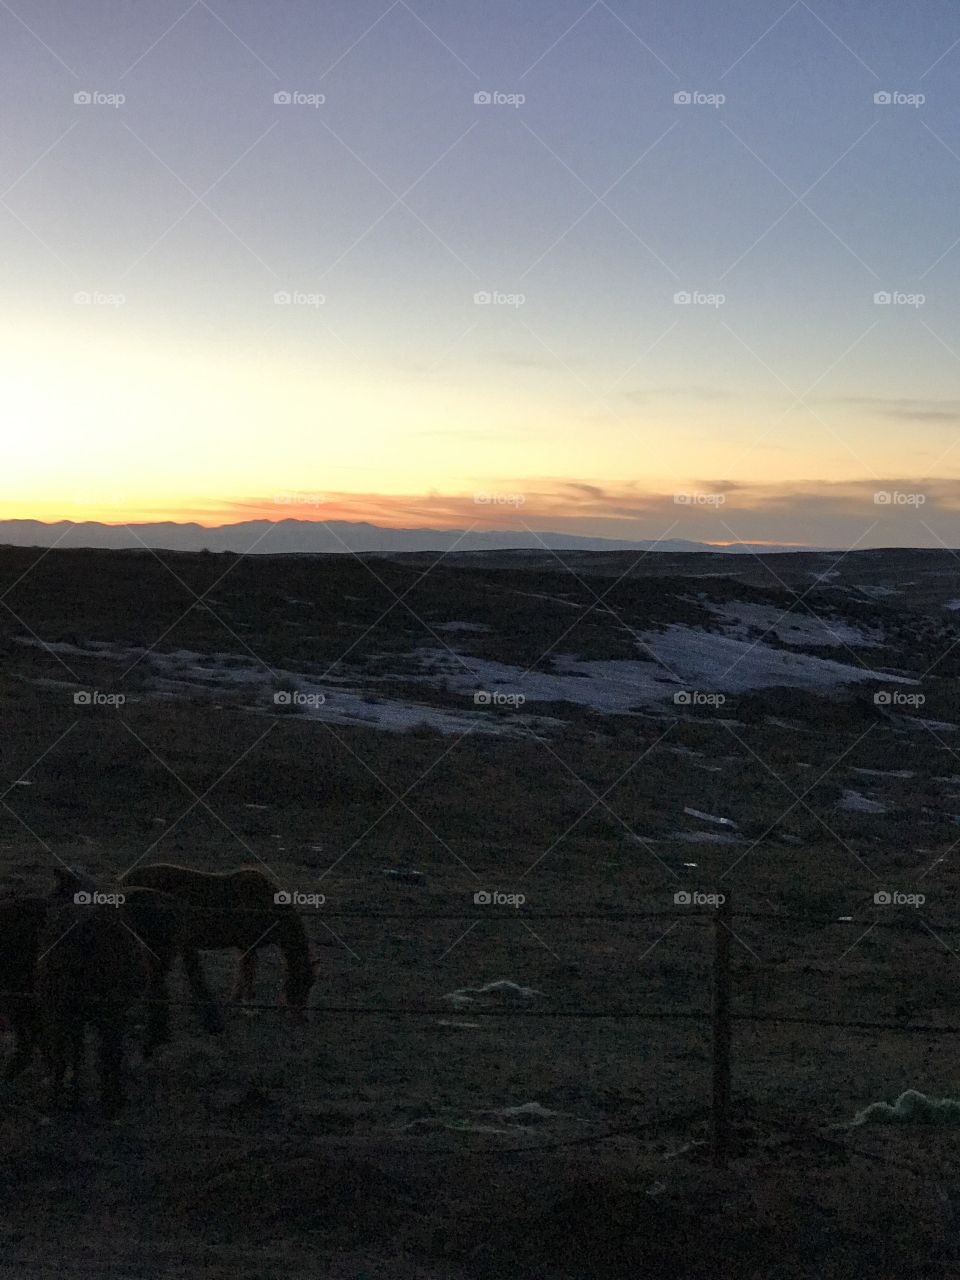 Wyoming winter sunset